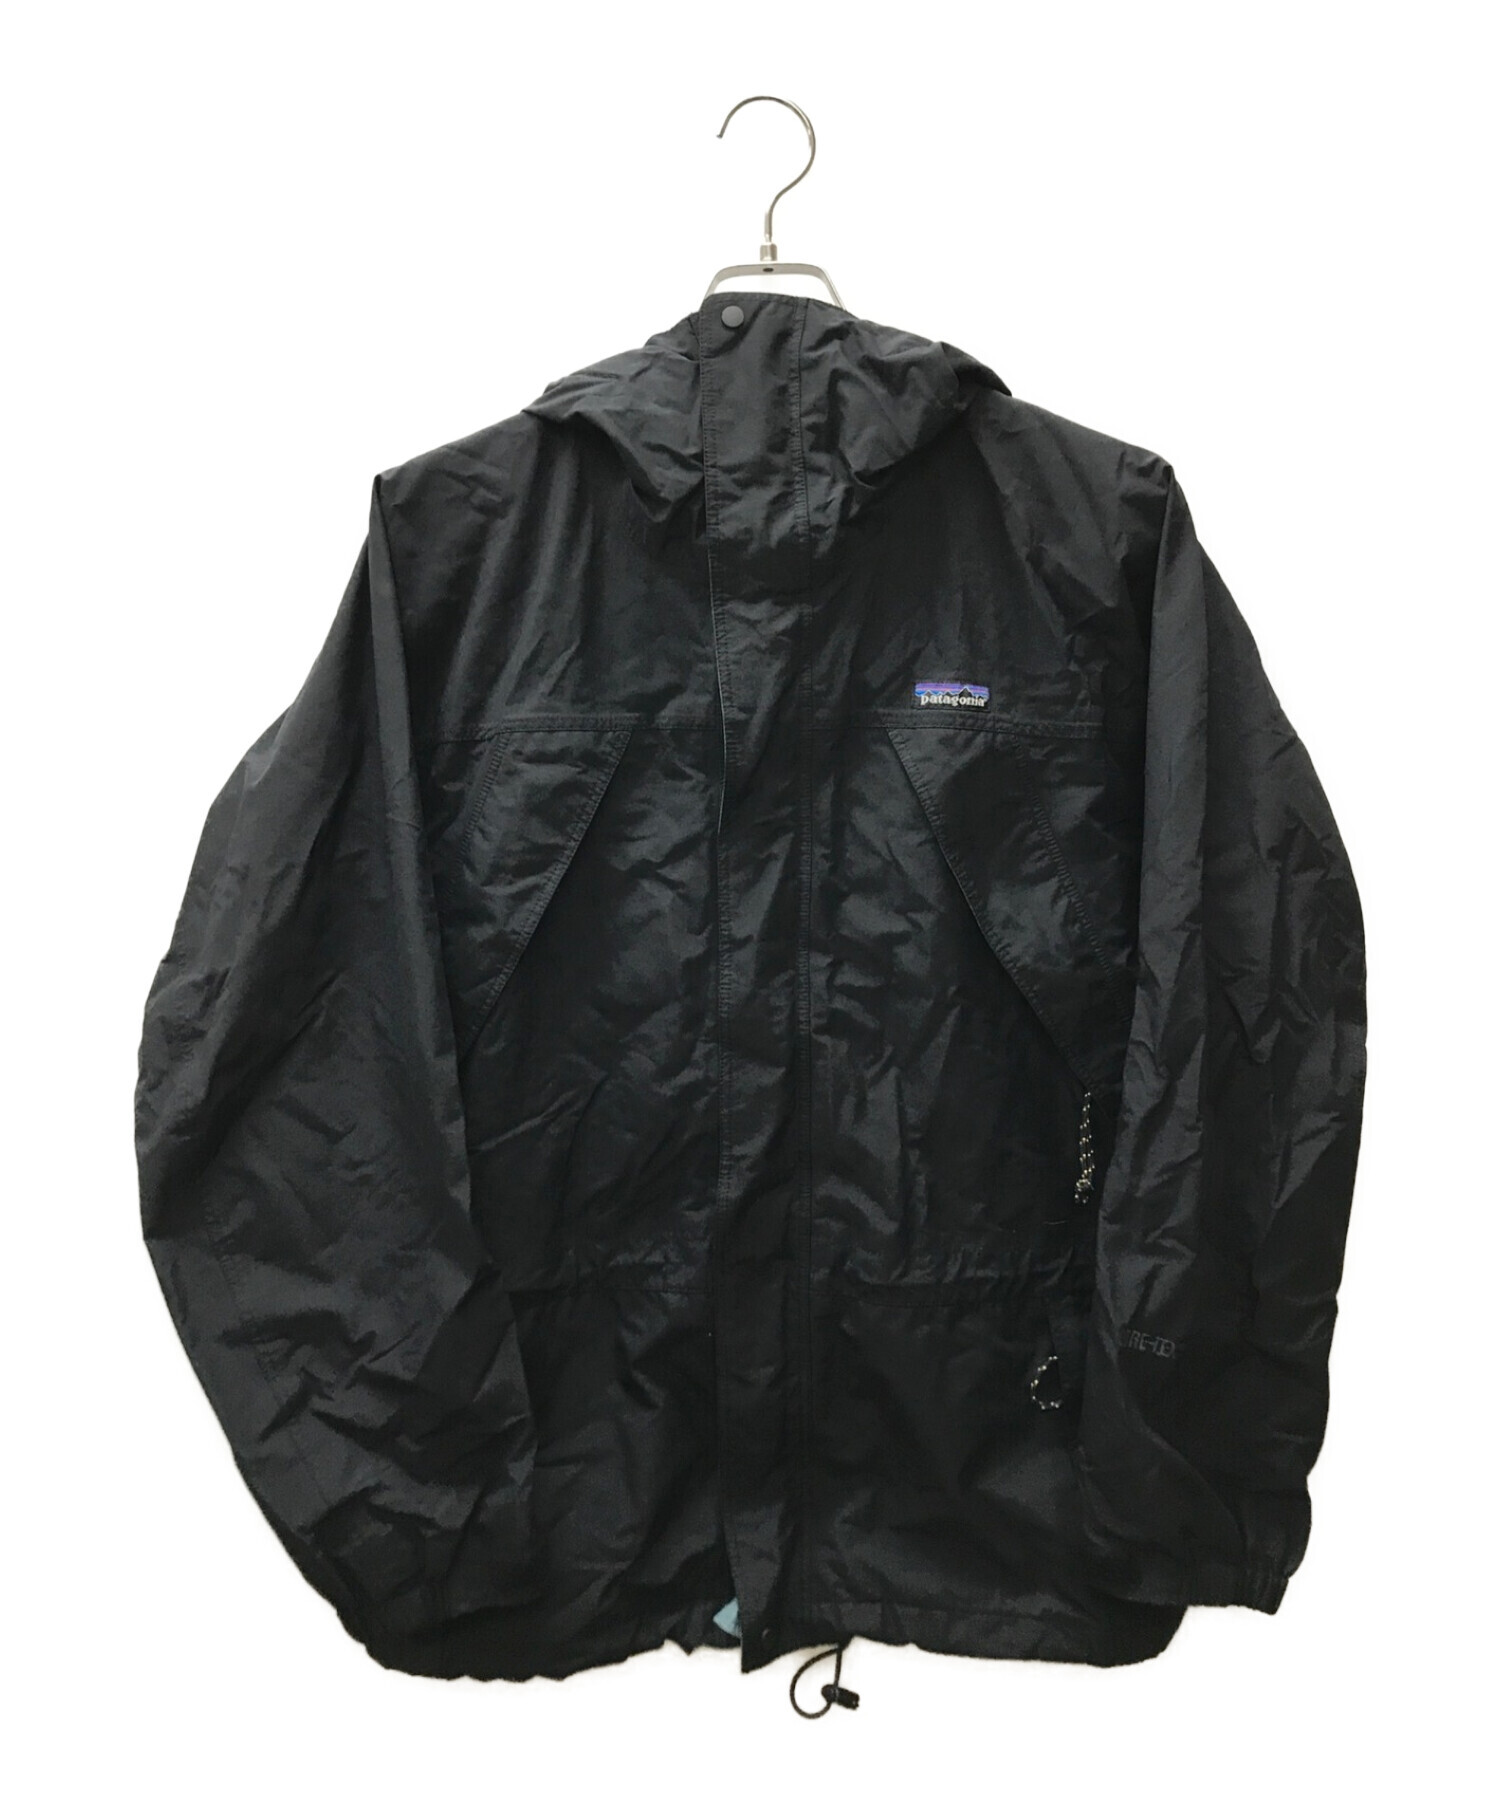 〔ジャンク品〕Patagonia ストームジャケット ブラック サイズL